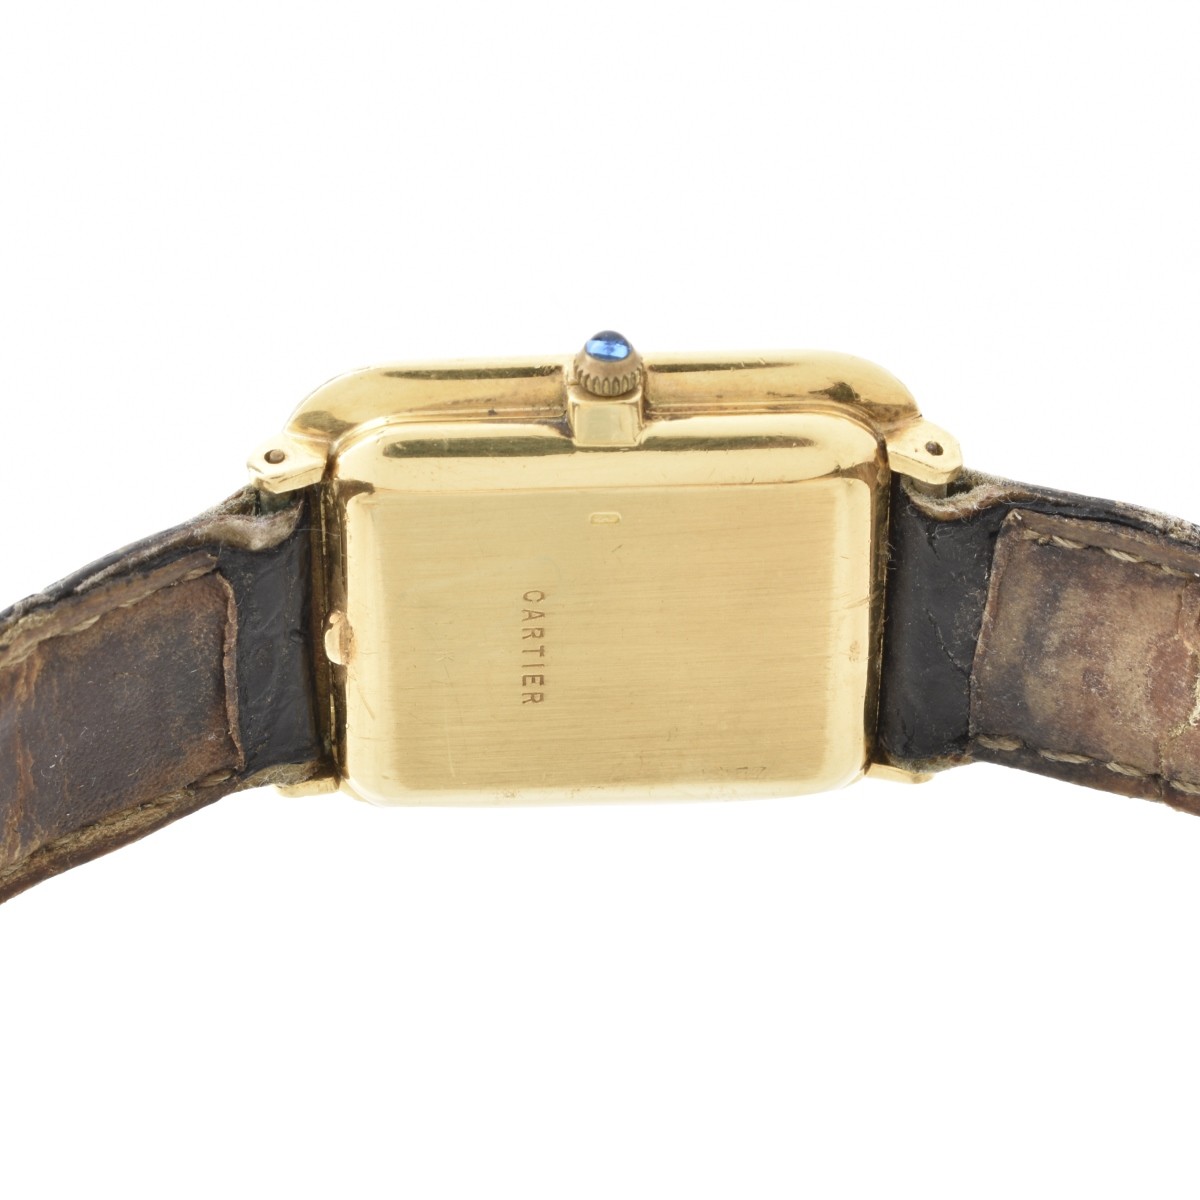 Cartier 18K Watch